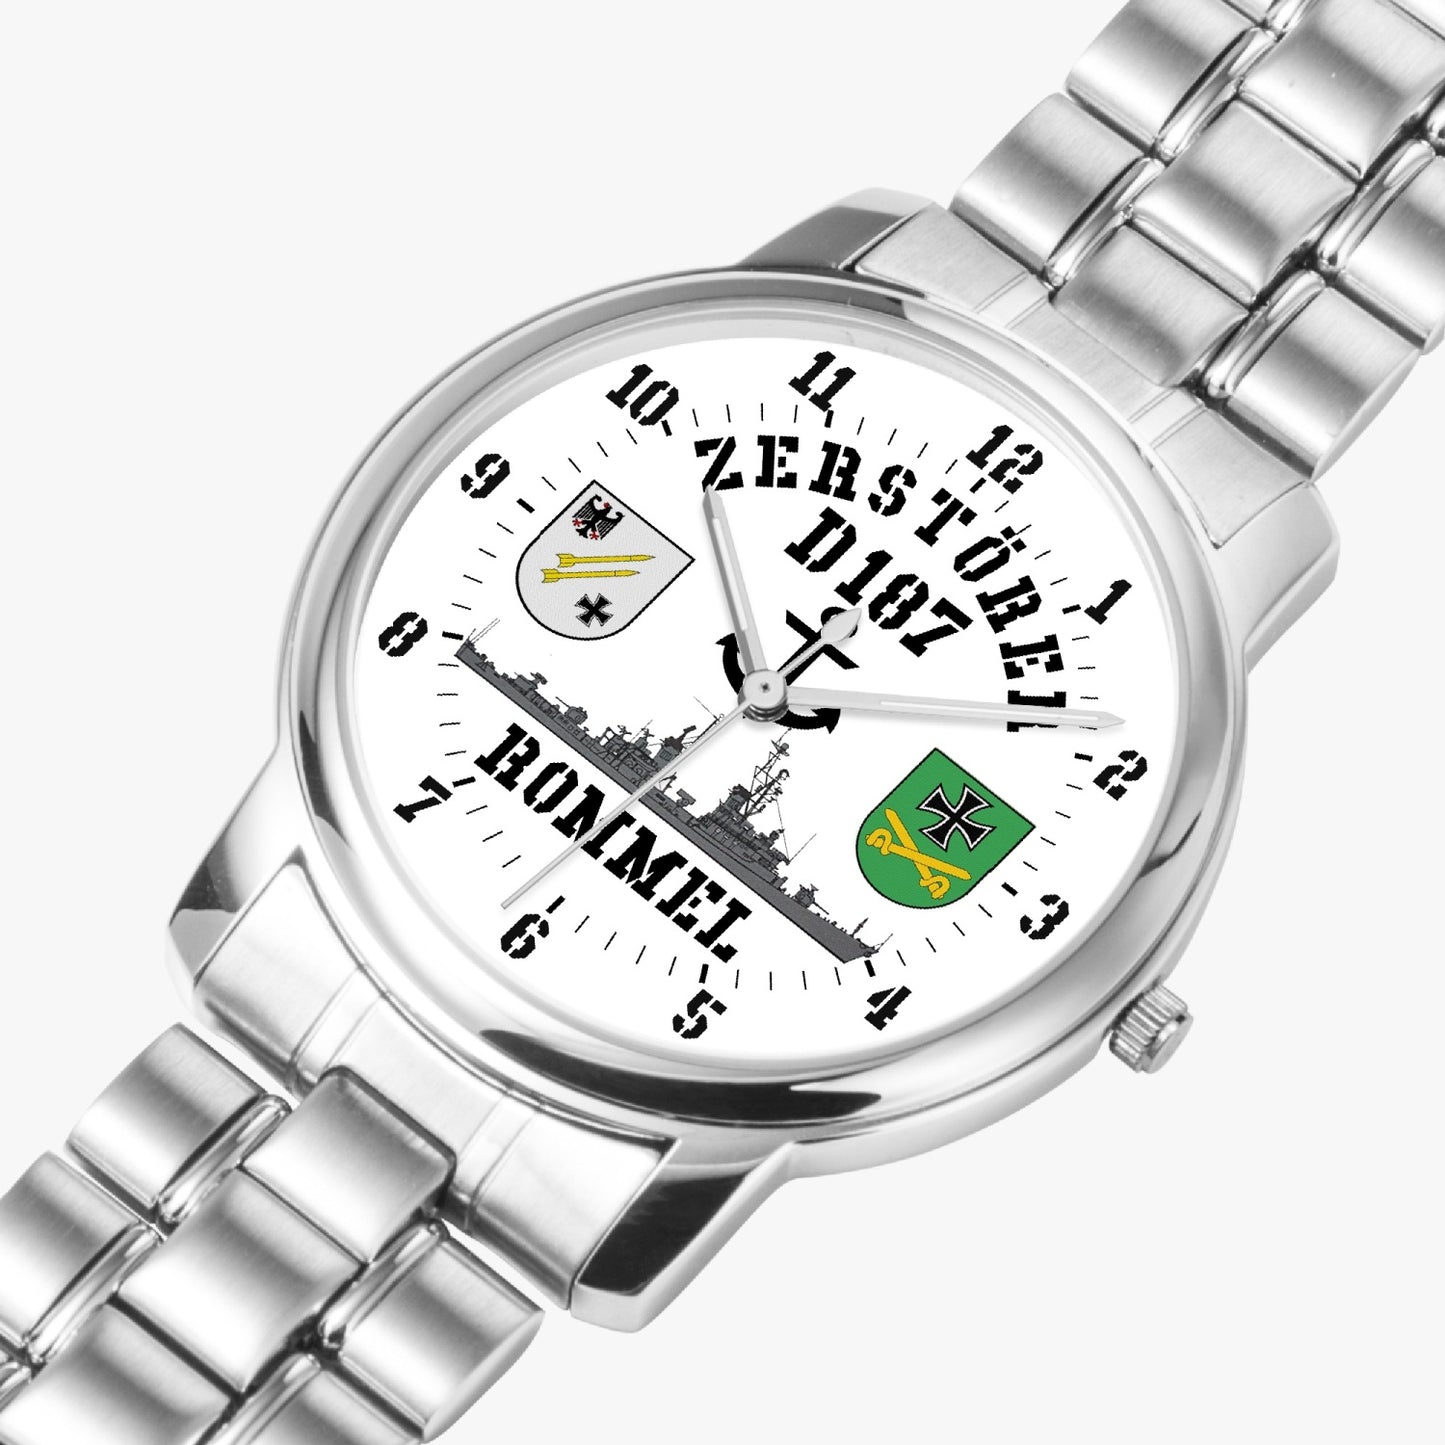 Armbanduhr Zerstörer D187 ROMMEL - Batterie